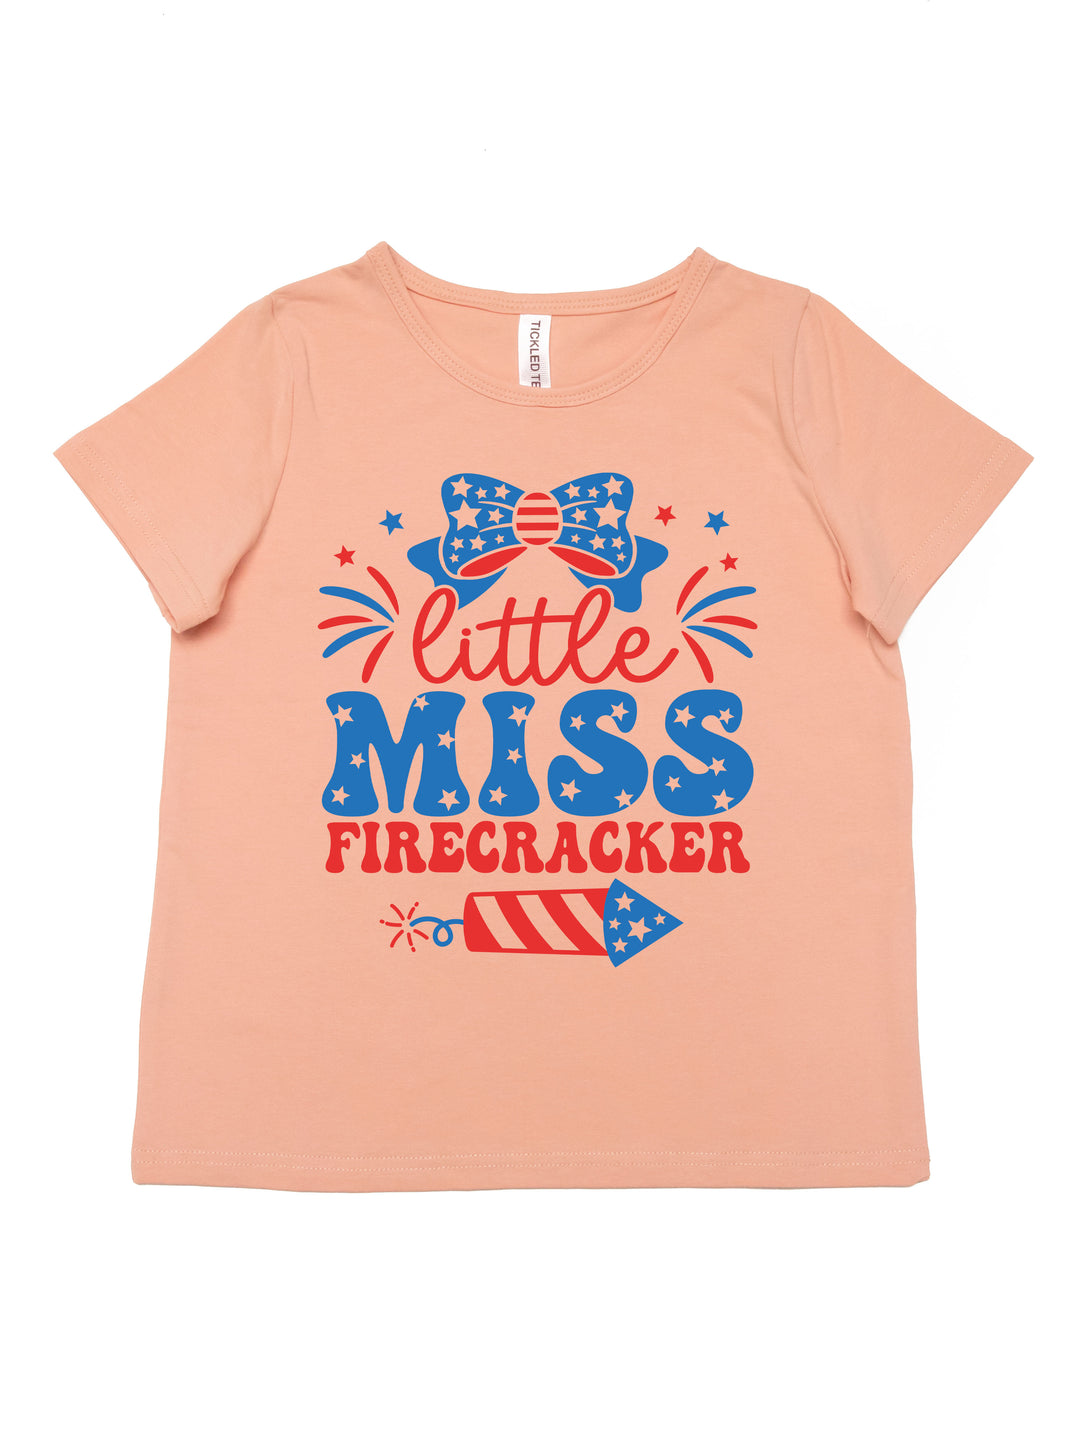 Little Miss Firecracker Kids Graphic Tee